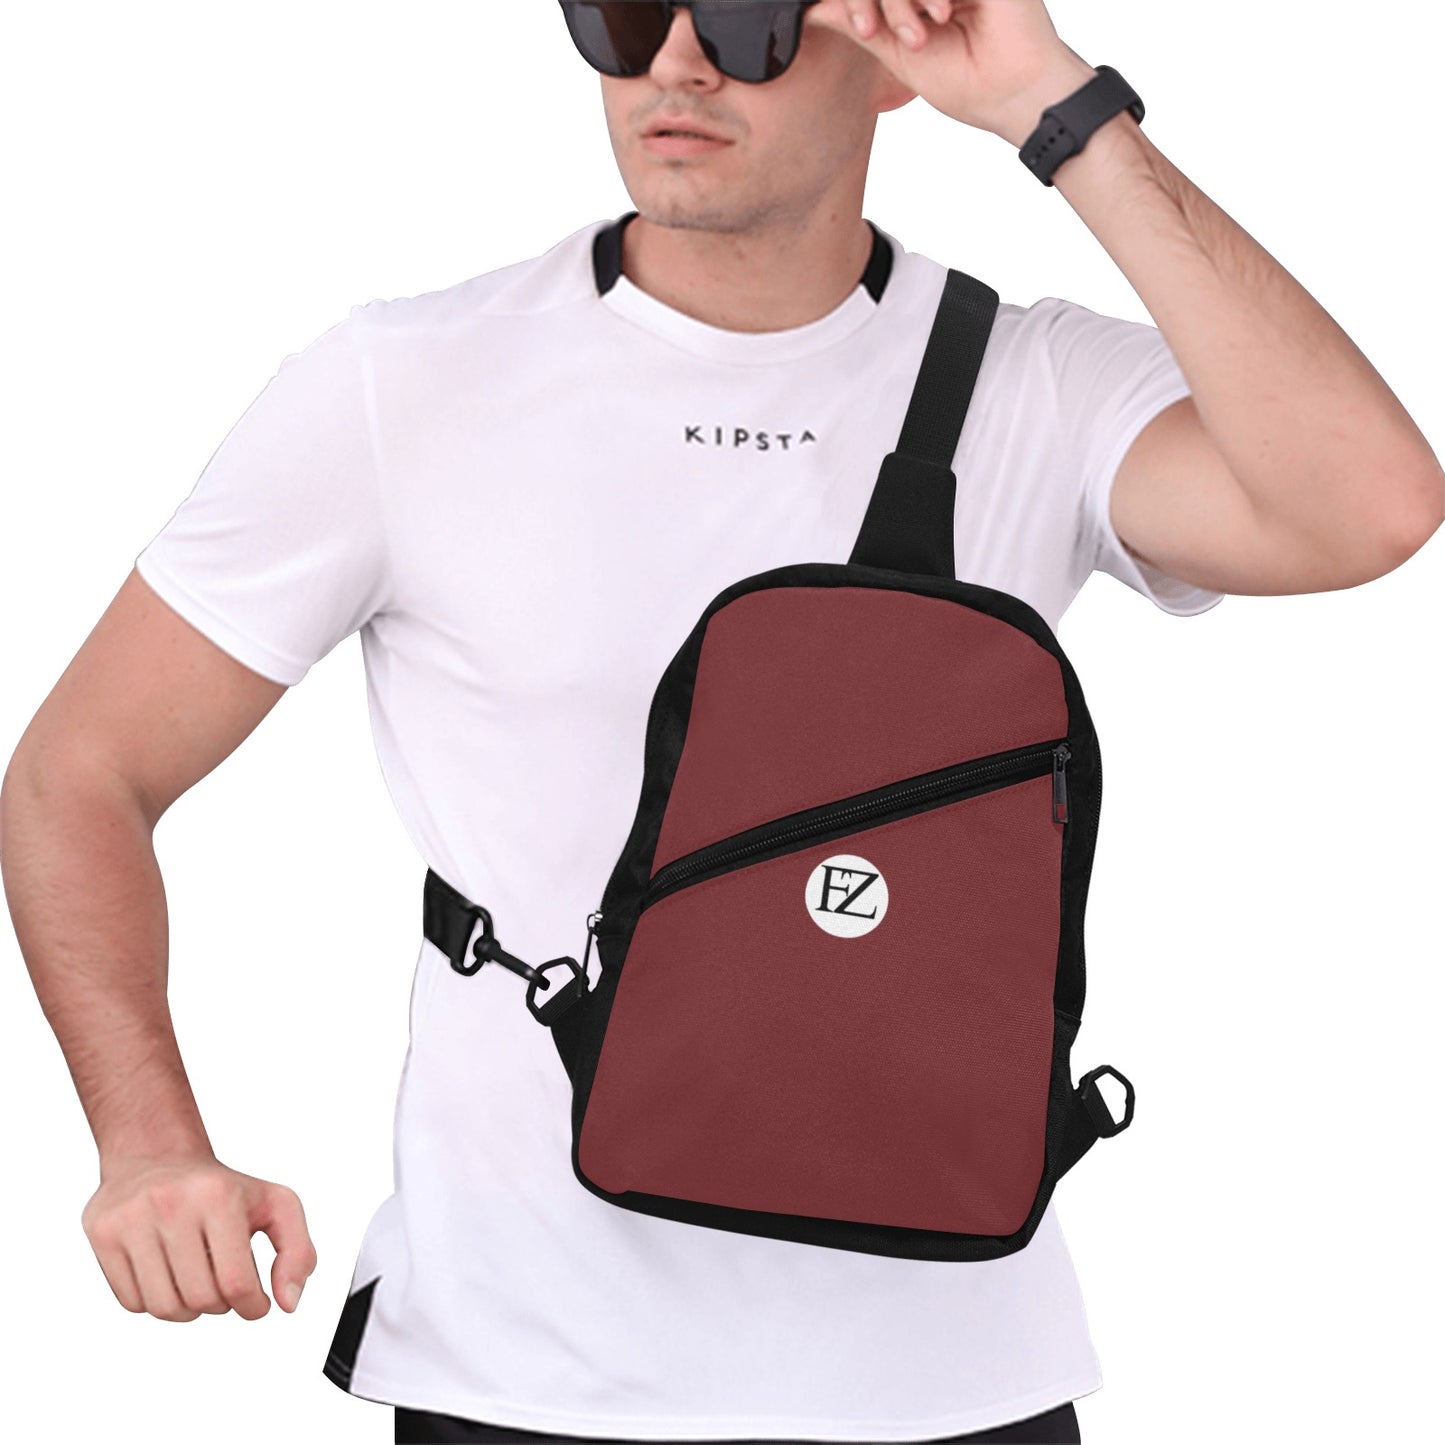 fz men's chest bag one size / fz chest bag-burgundy men's chest bag (model1726)